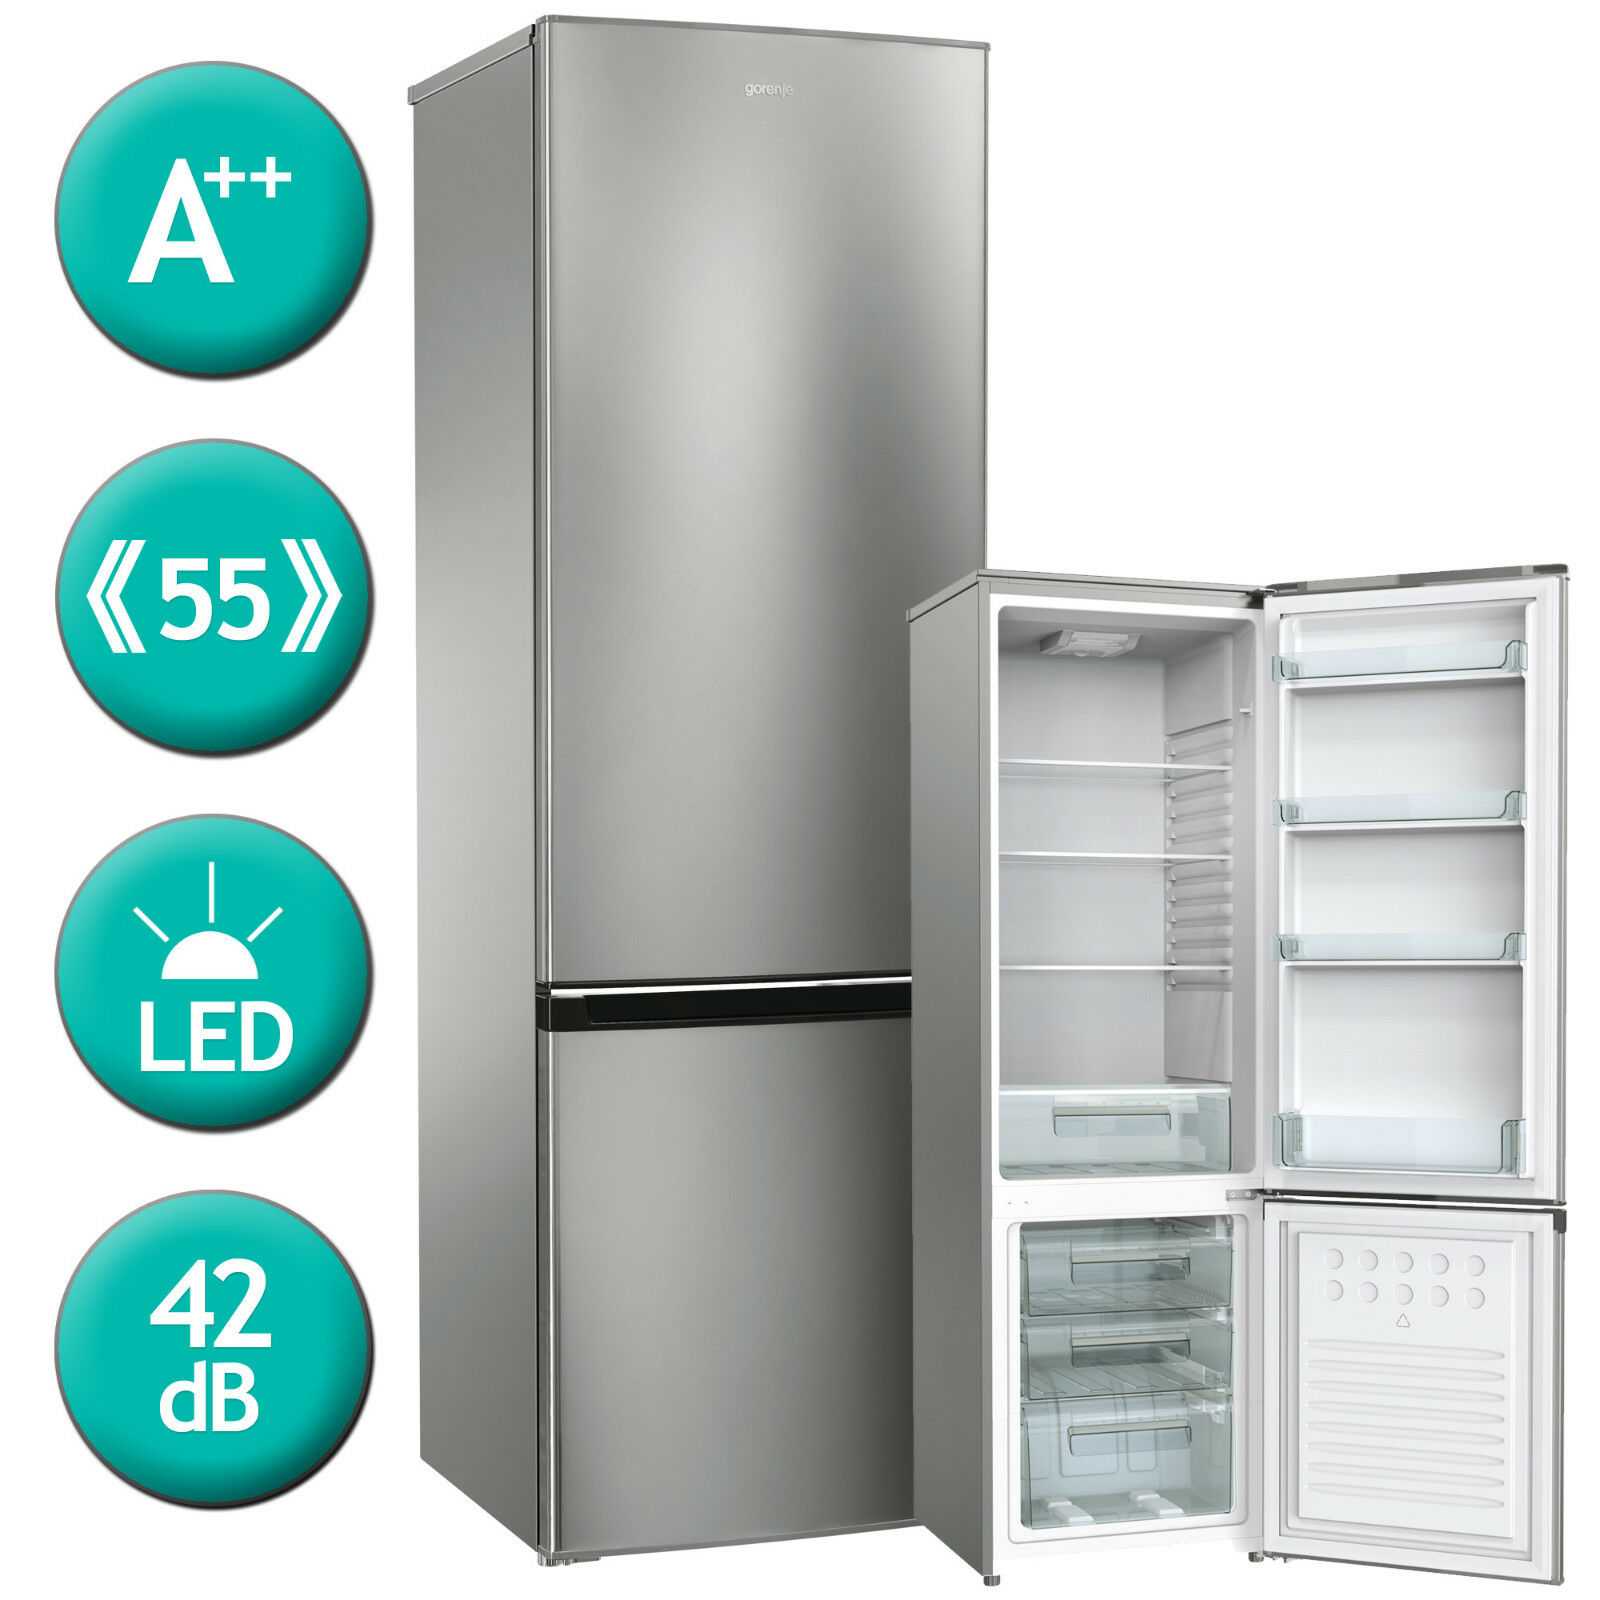 Рейтинг топ 10 лучших холодильников 2019 – 2020 по качеству и надежности! отзывы специалистов, обзор